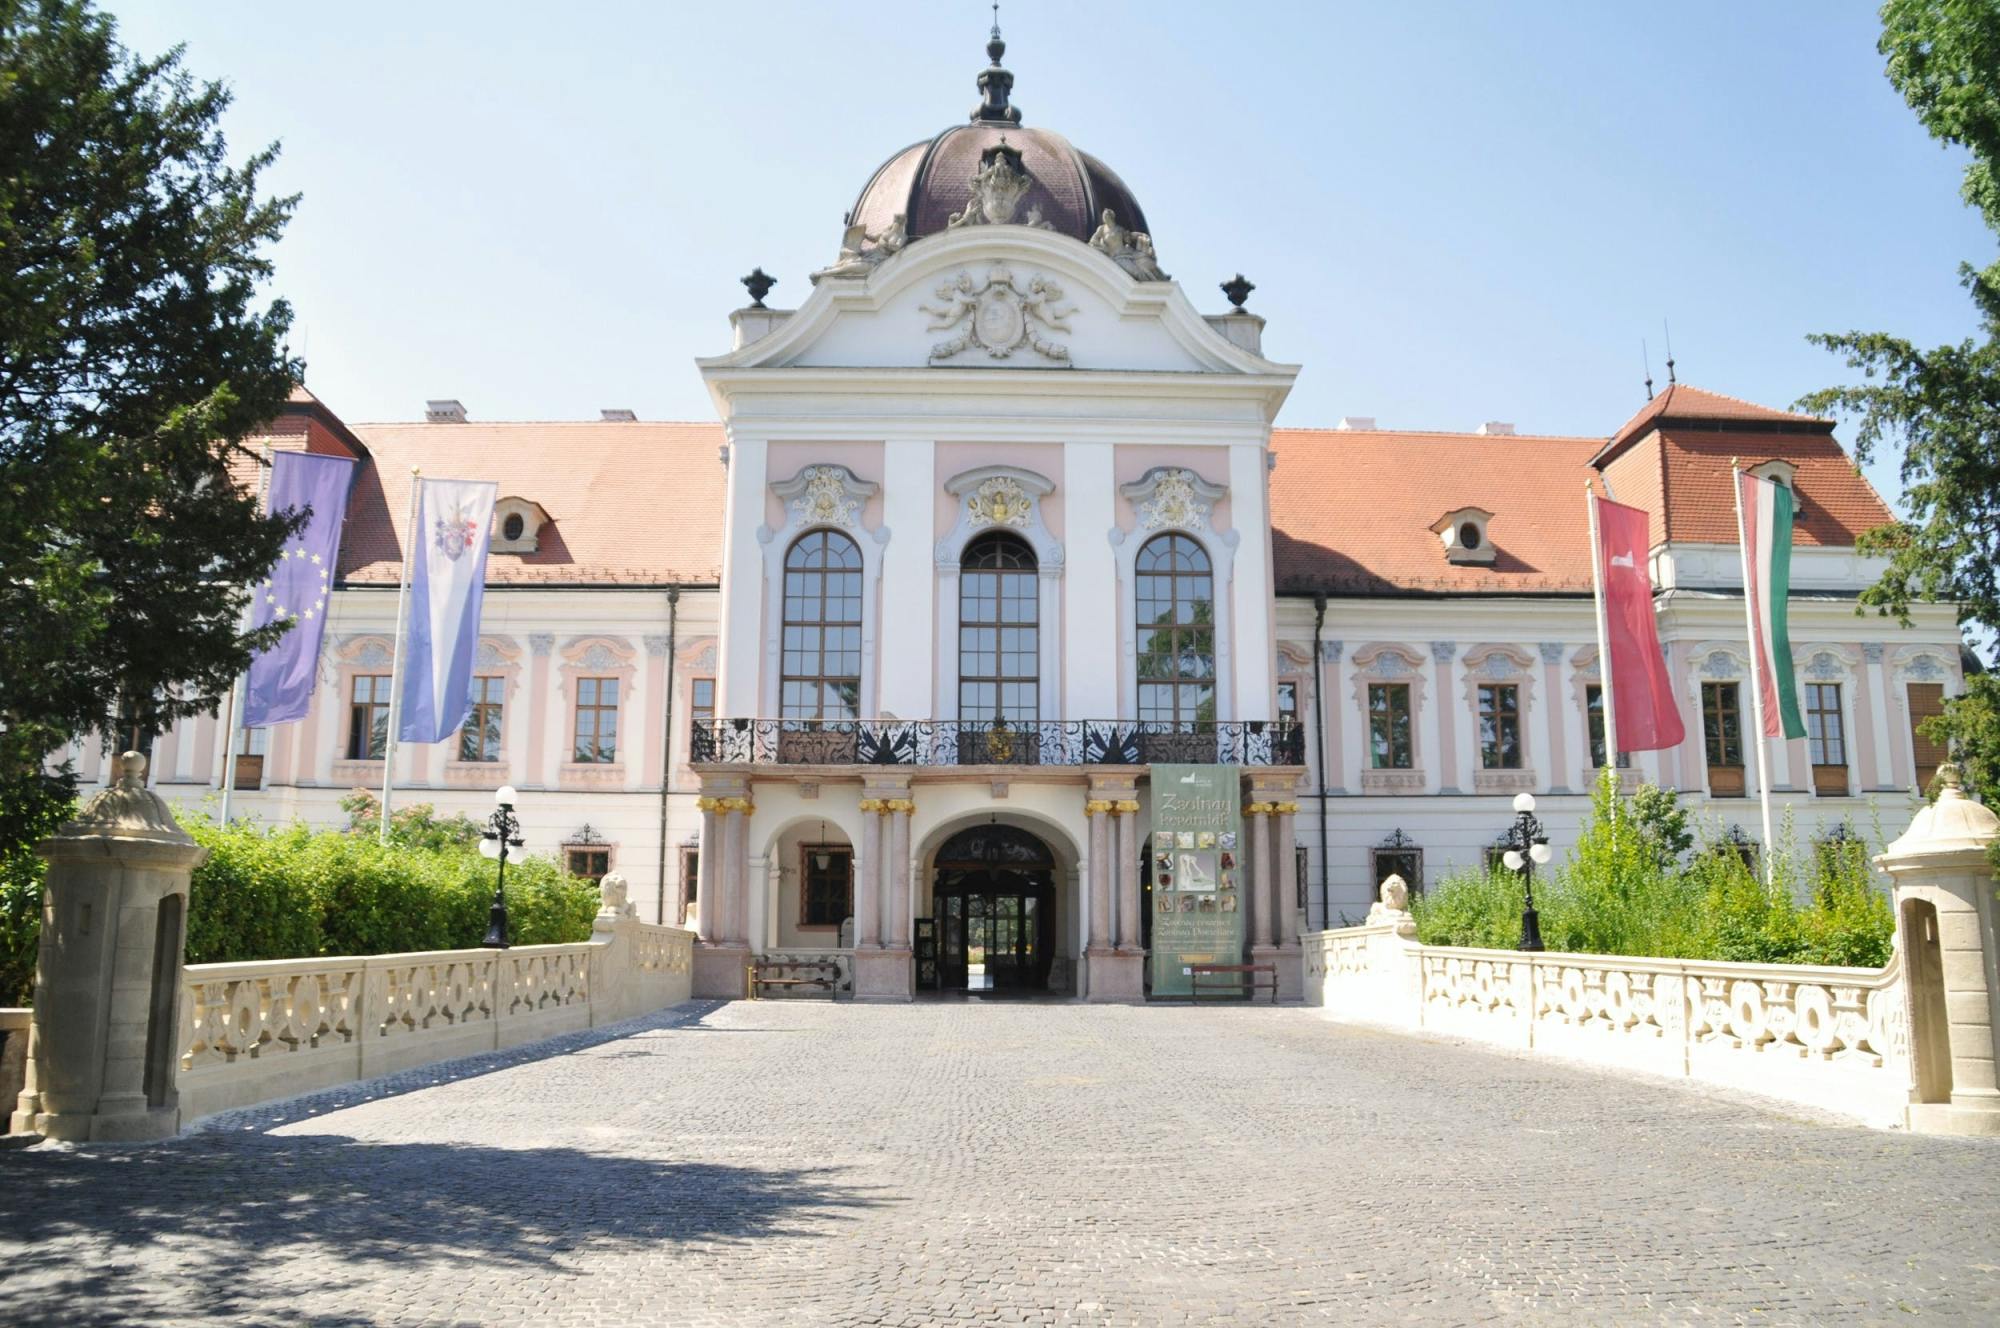 Excursão de meio dia ao palácio real Gödöllő da princesa Sissi saindo de Budapeste